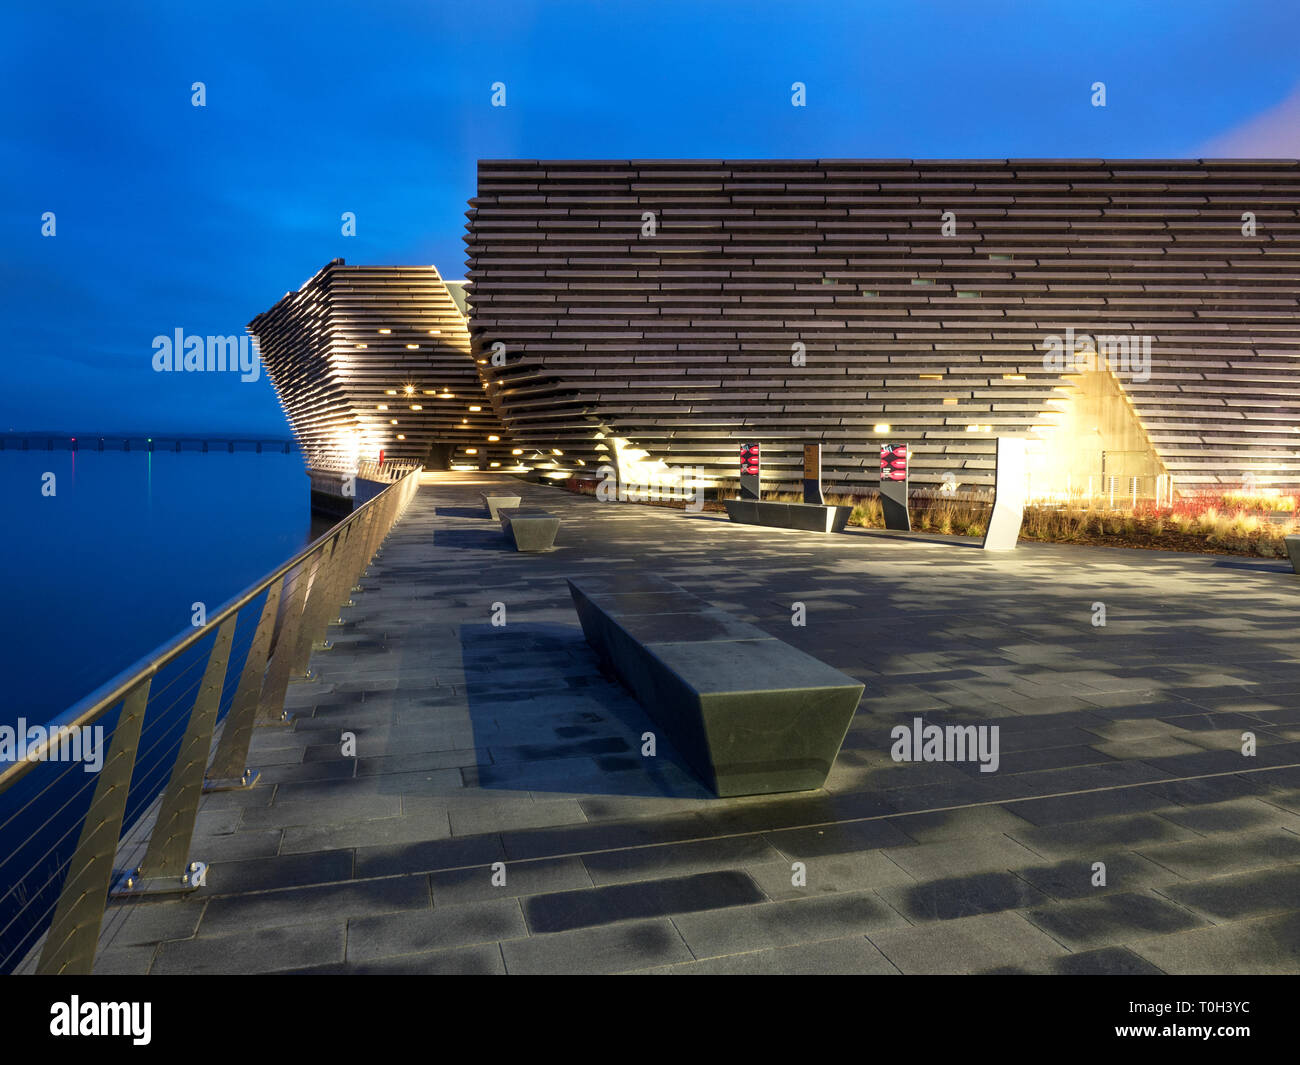 V&A Dundee Design Museum von Kengo Kuma am Flußufer Esplanade Dundee Schottland konzipiert Stockfoto